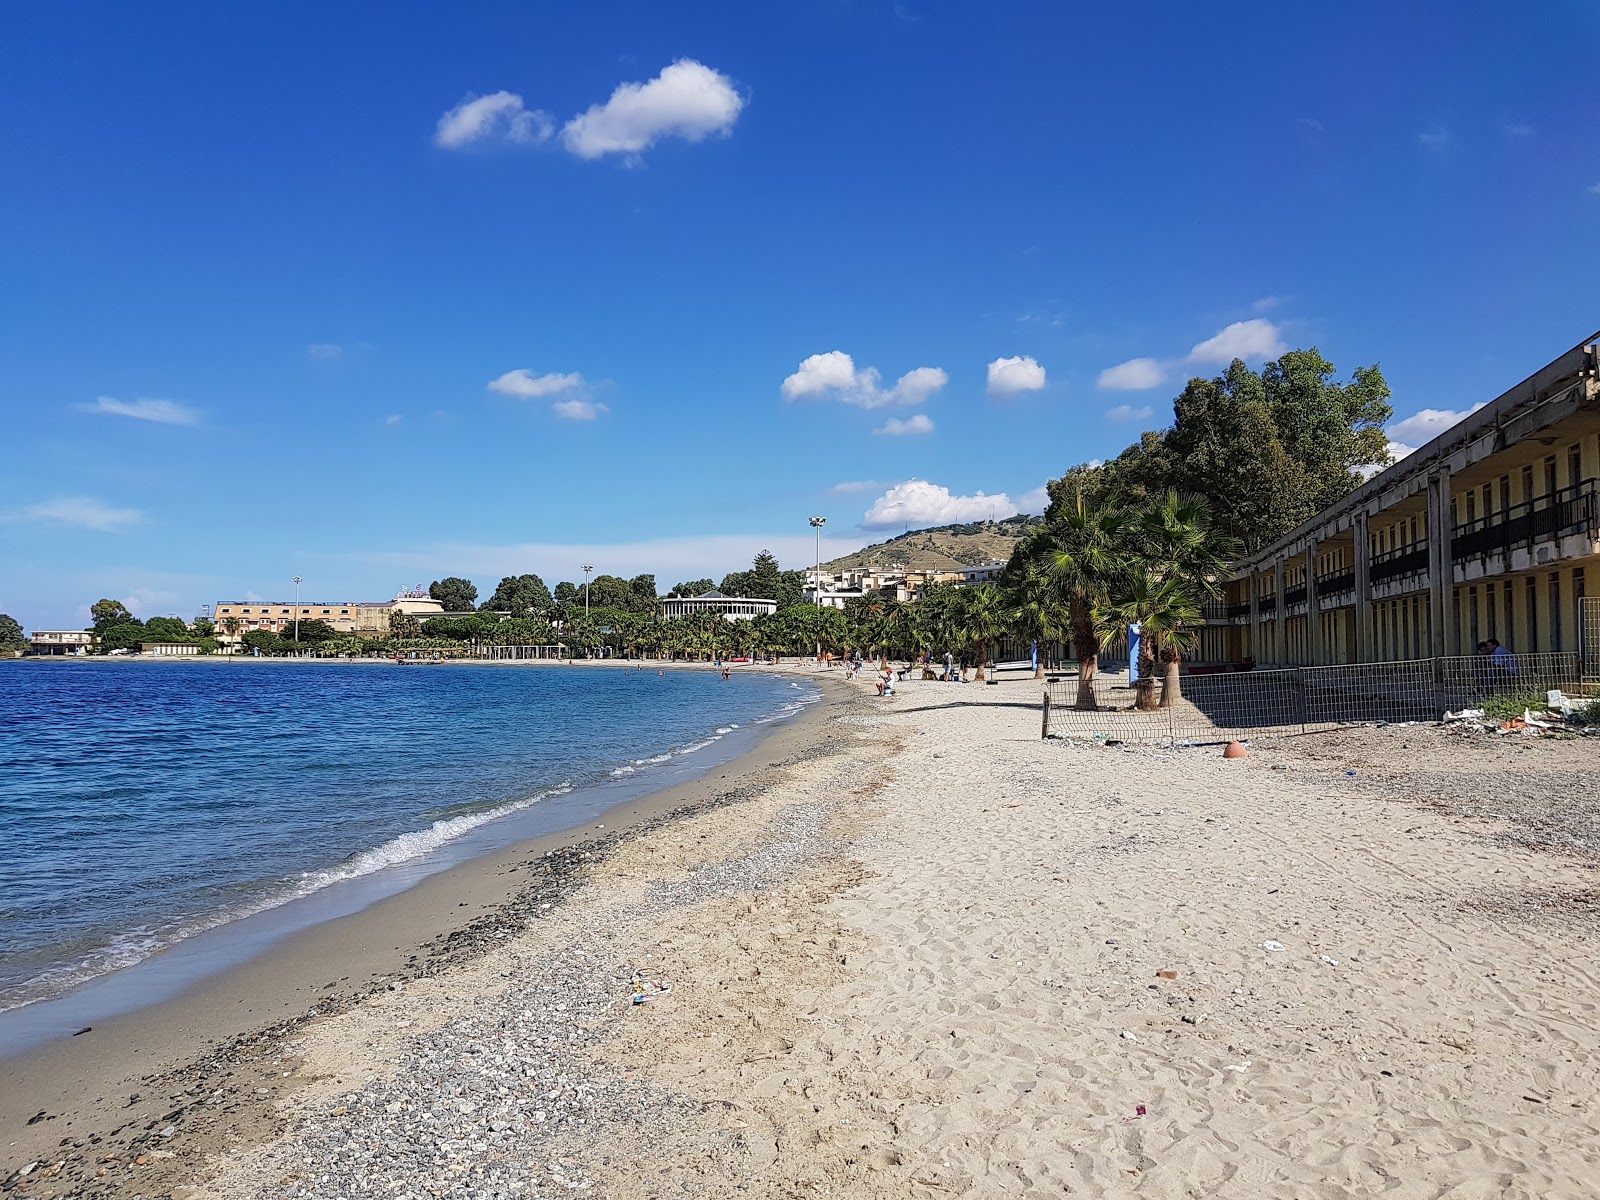 Reggio Calabria beach'in fotoğrafı kahverengi kum yüzey ile